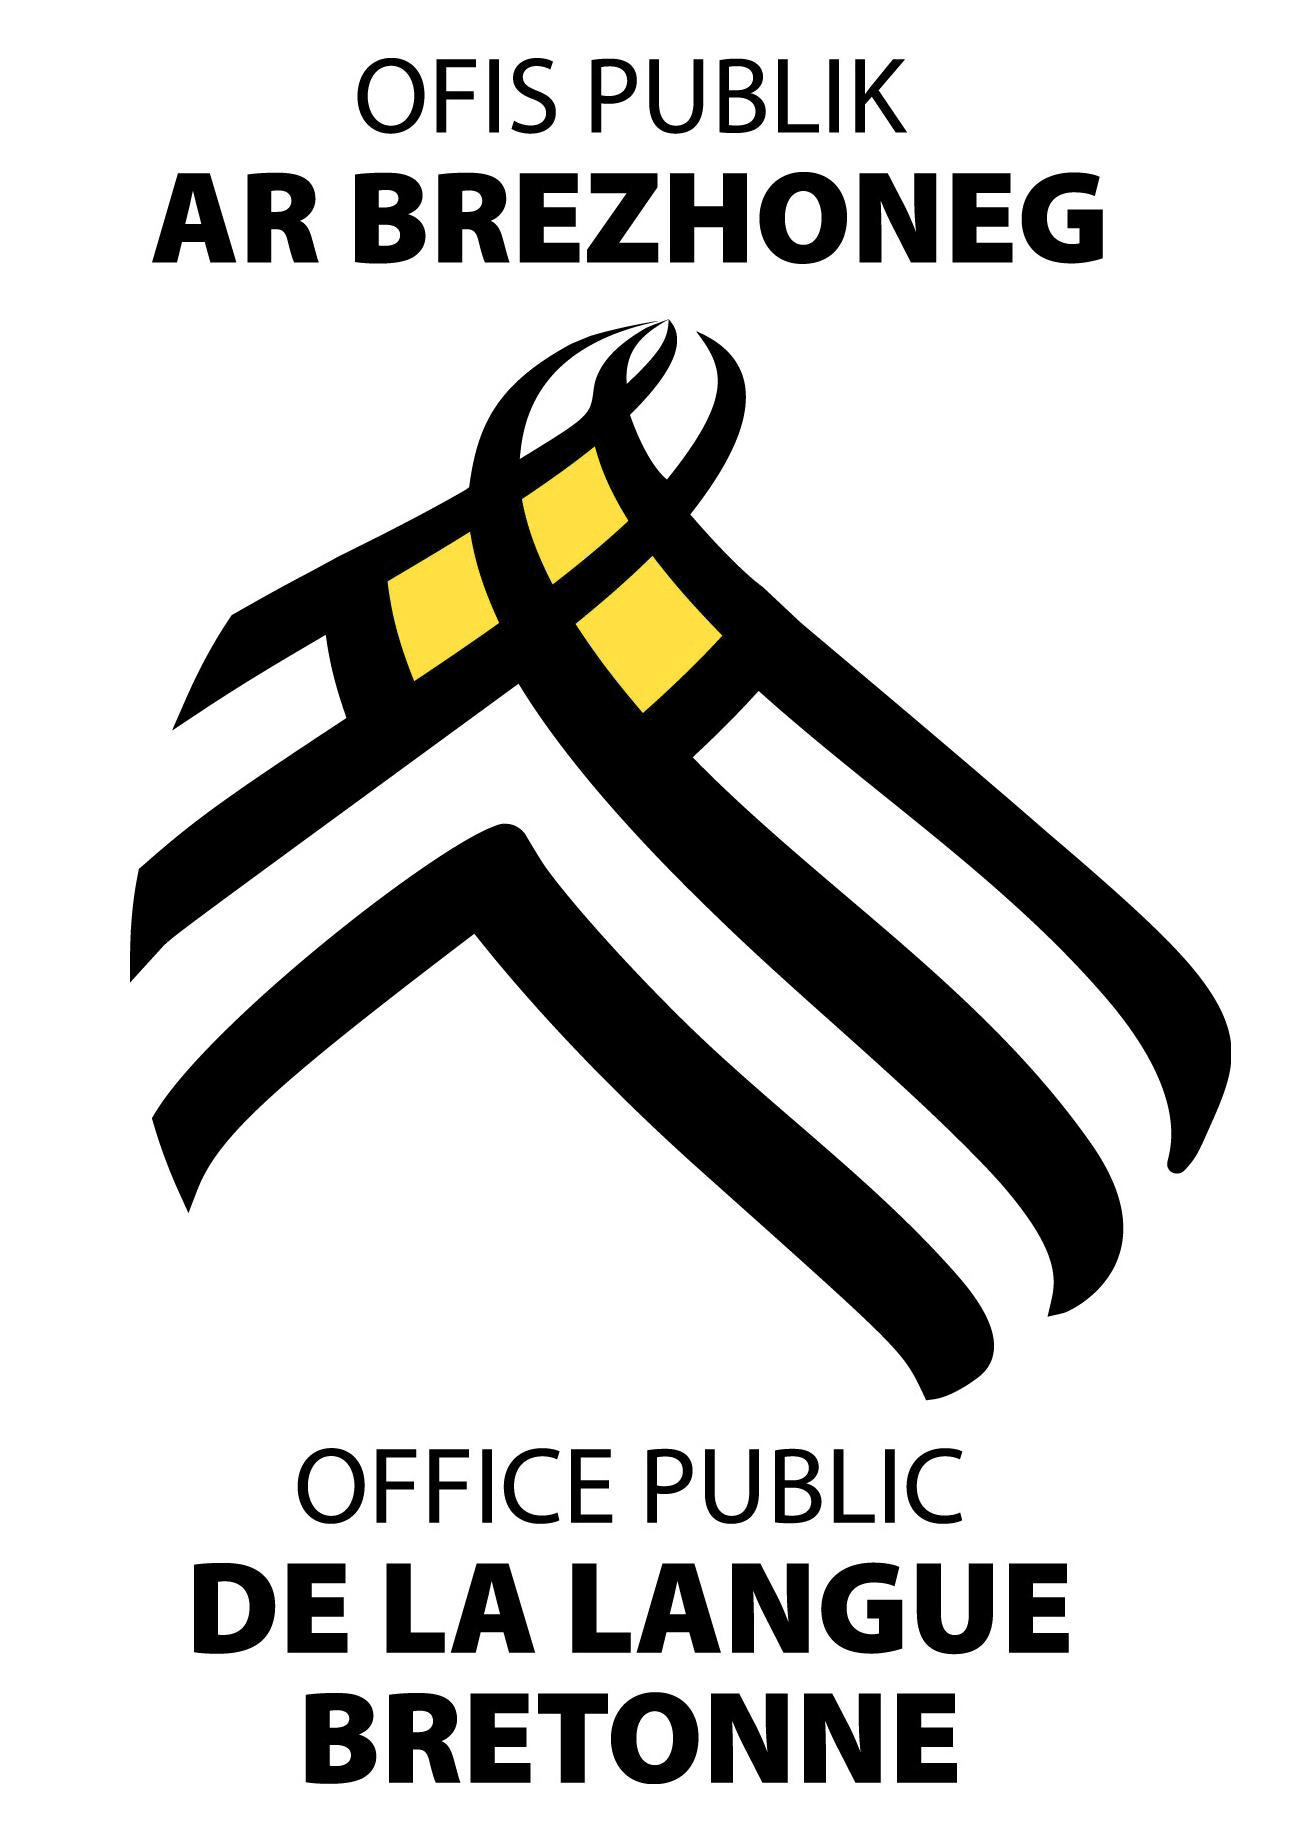 Office public de la langue bretonne logo